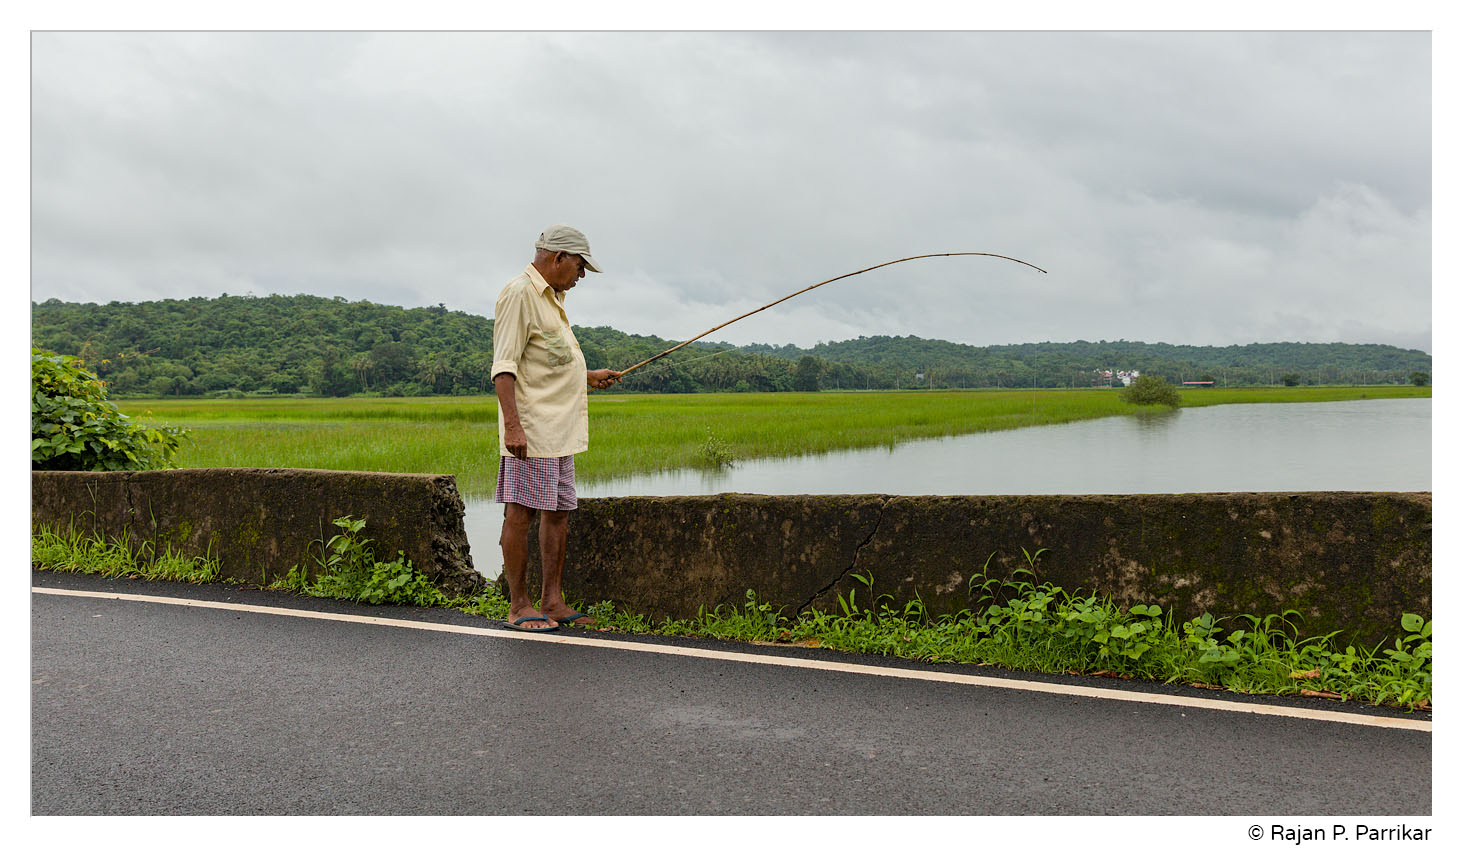 Chandramohan Naik, fishing in Paithona, Goa